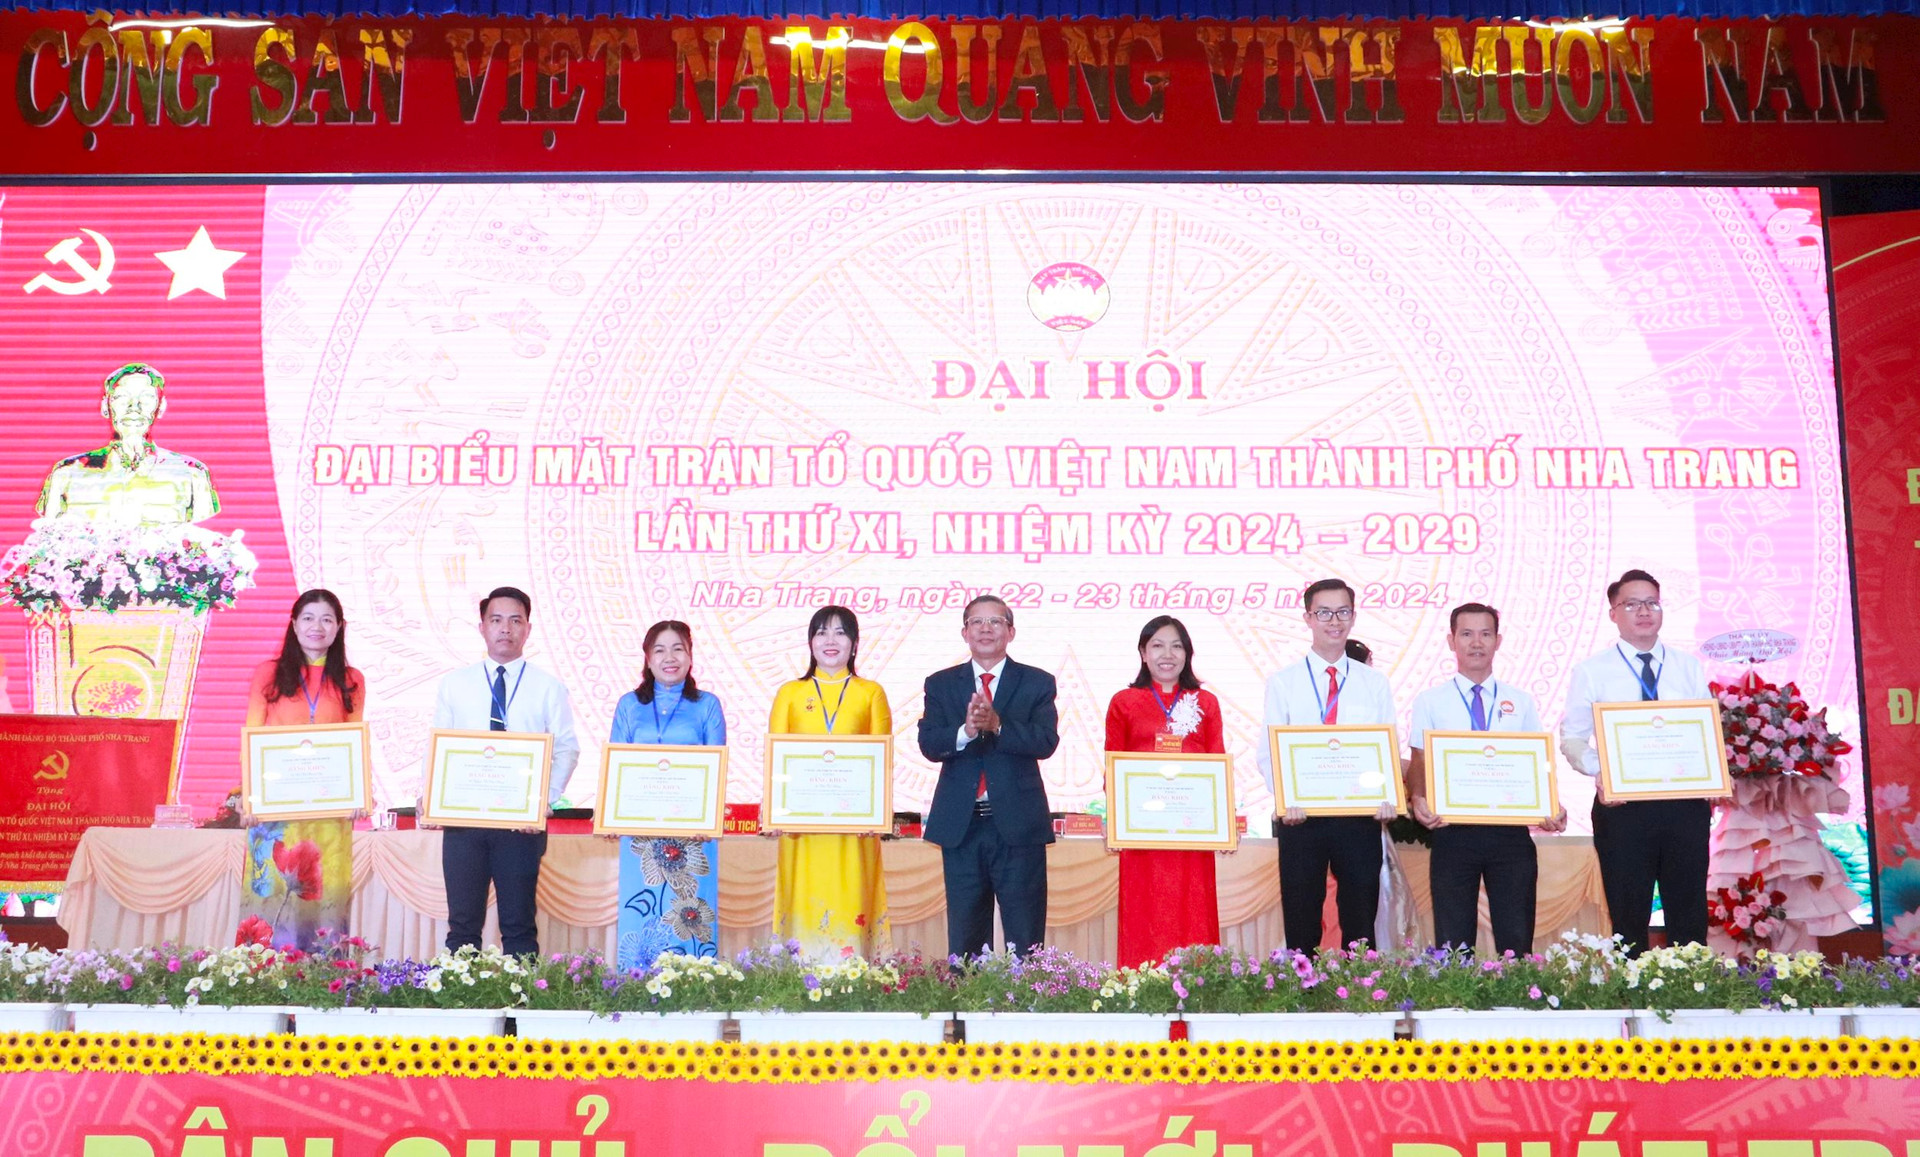 Ông Trần Ngọc Thanh, Chủ tịch Uỷ ban MTTQ Việt Nam tỉnh Khánh Hòa tặng Bằng khen cho tập thể và cá nhân có thành tích xuất sắc trong công tác Mặt trận nhiệm kỳ qua.